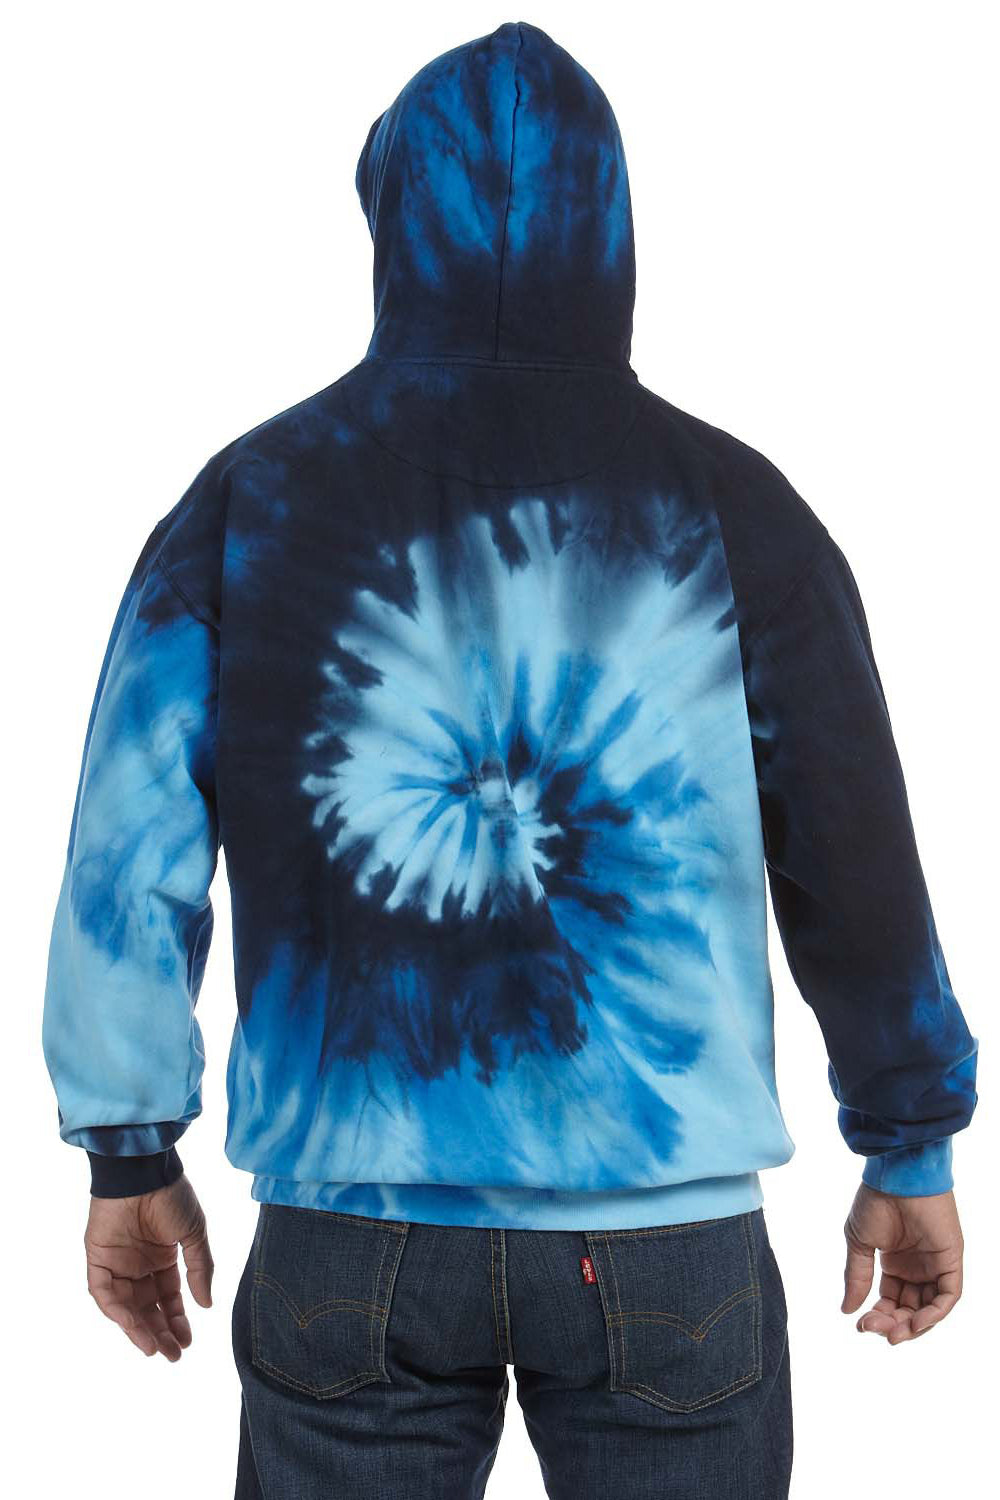 Tie-Dye CD877 Mens Hooded Sweatshirt Hoodie Blue Ocean Back